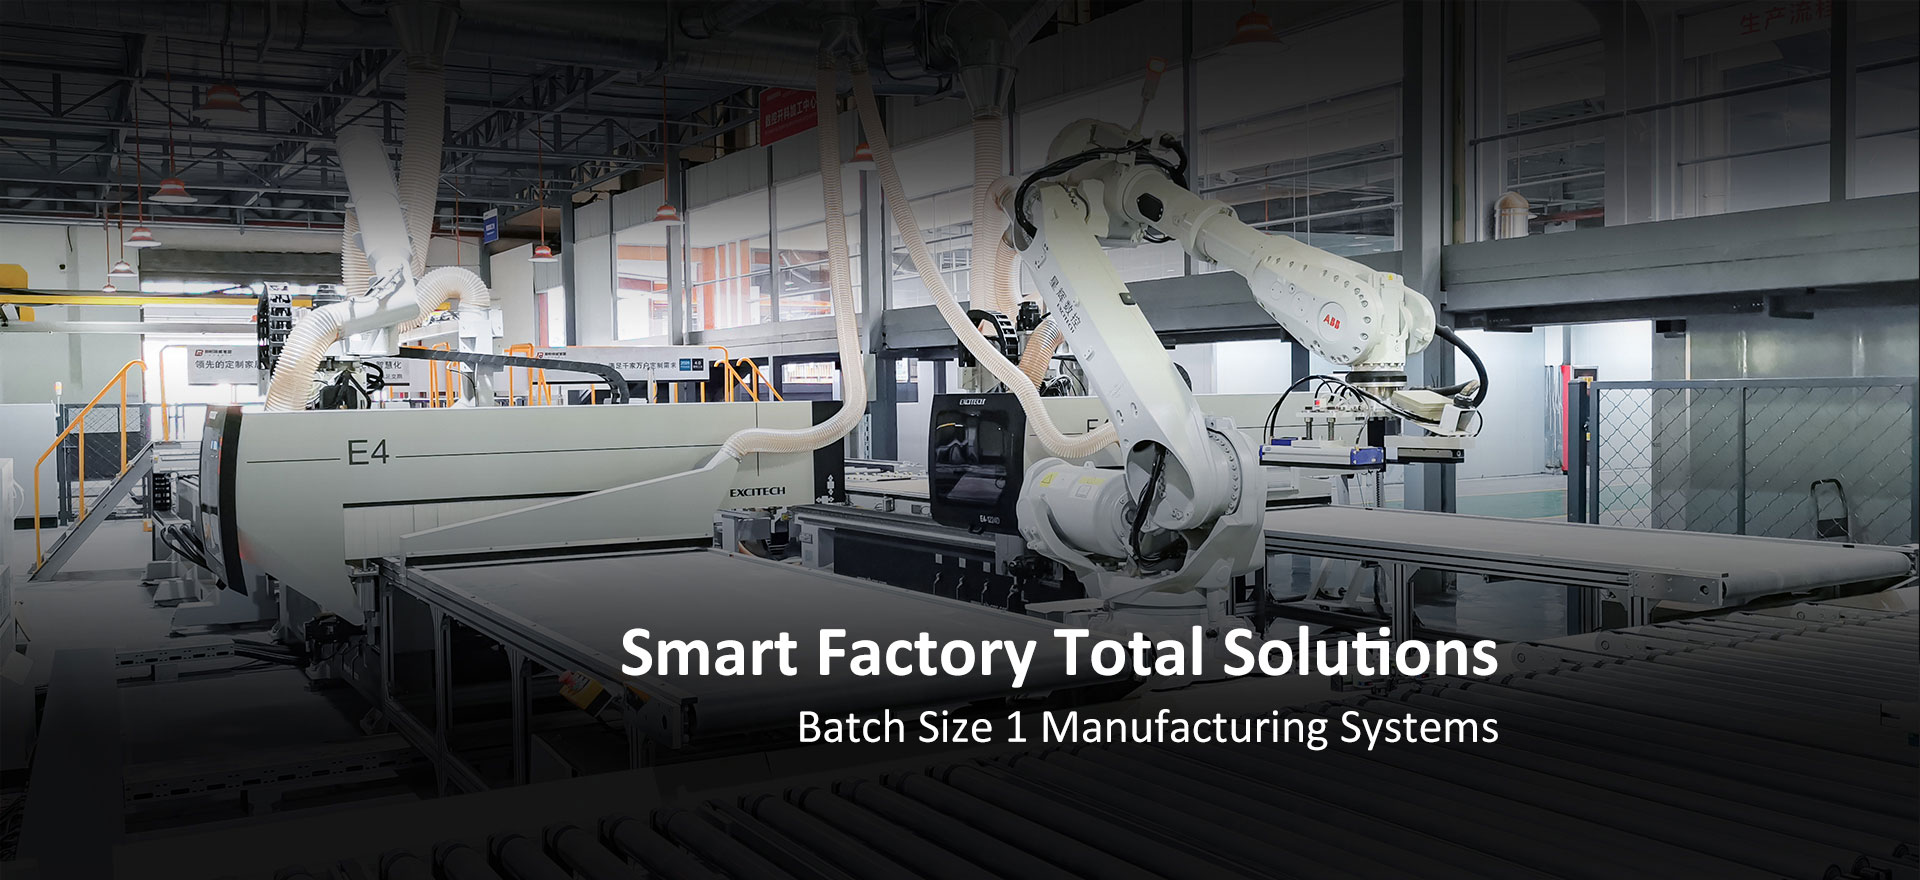 Kinas smarte fabriksproducenter